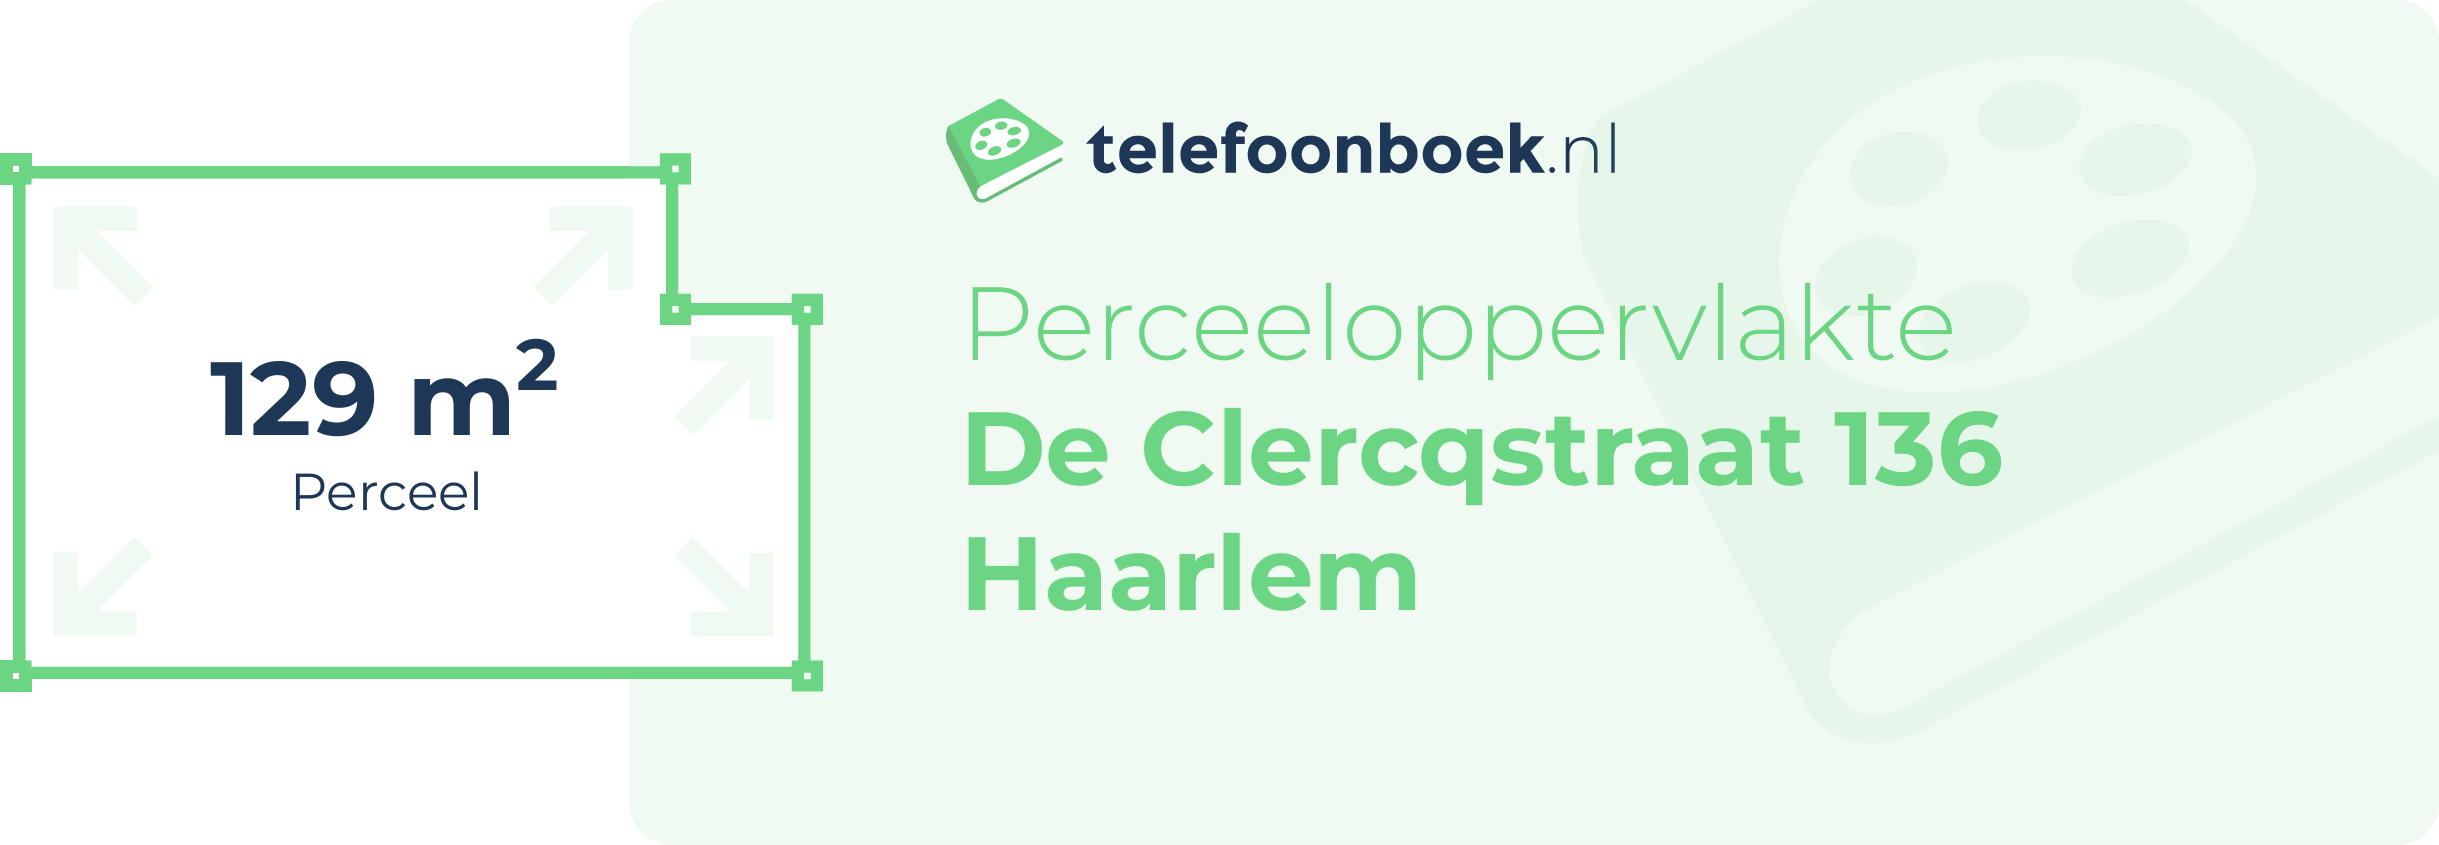 Perceeloppervlakte De Clercqstraat 136 Haarlem